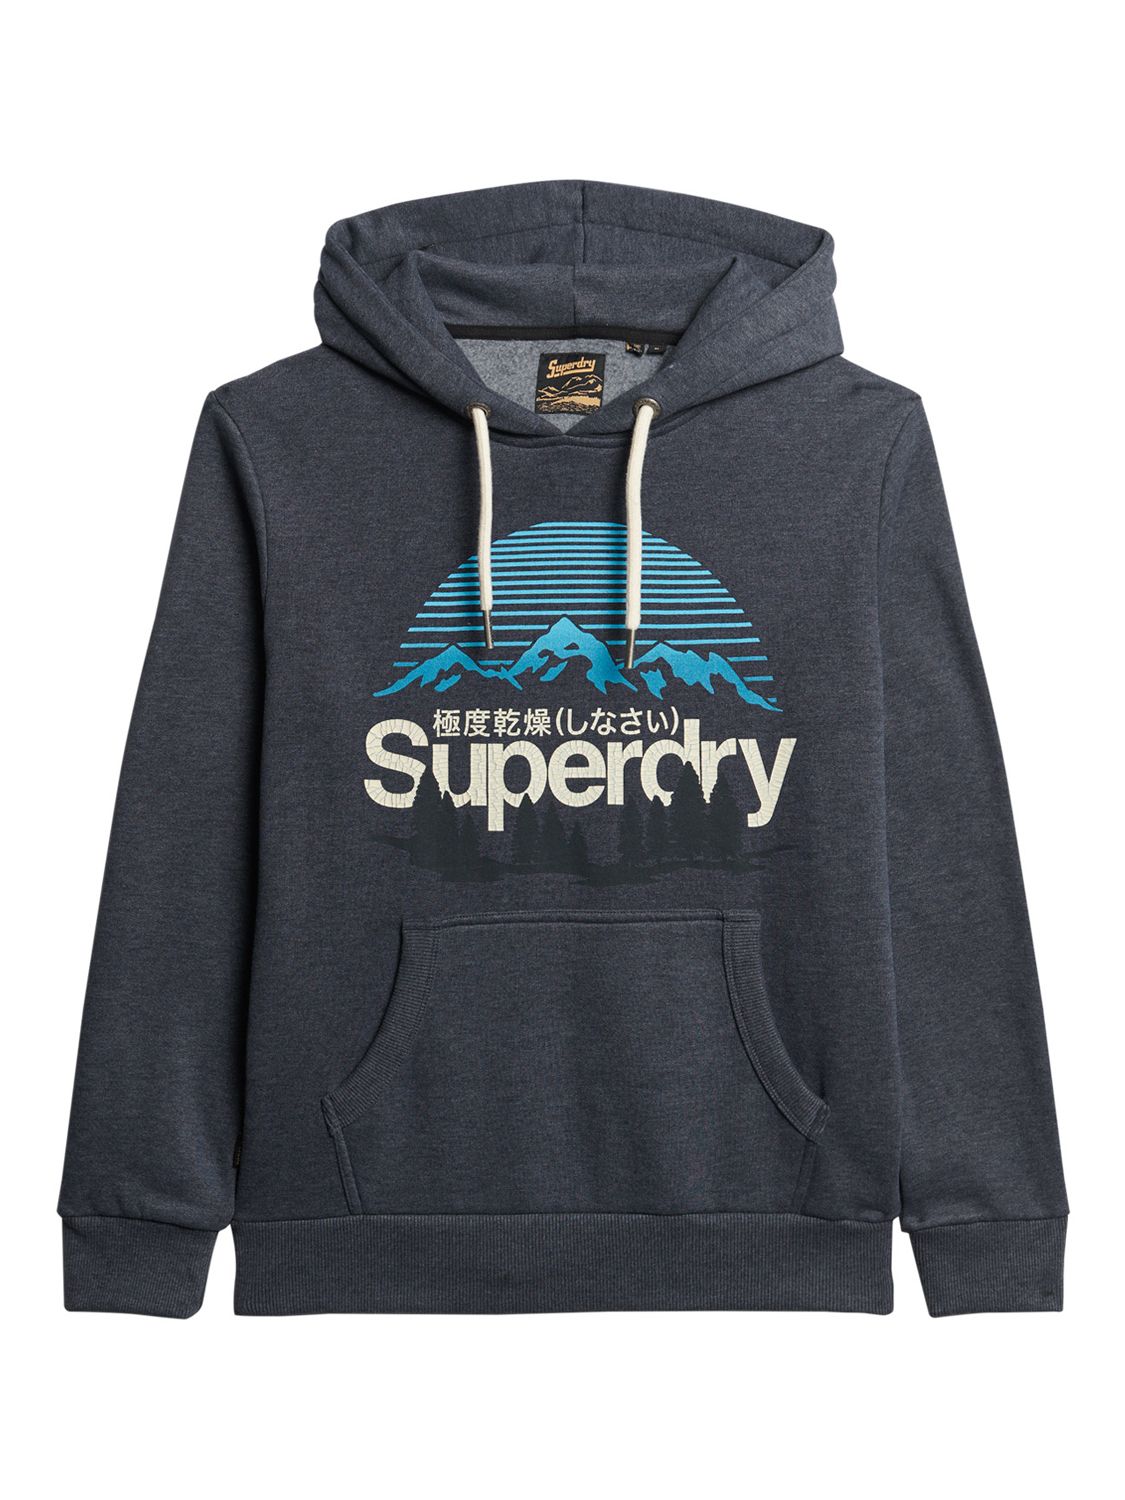 Buy Superdry Great Outdoors Logo Print Hoodie Online at johnlewis.com